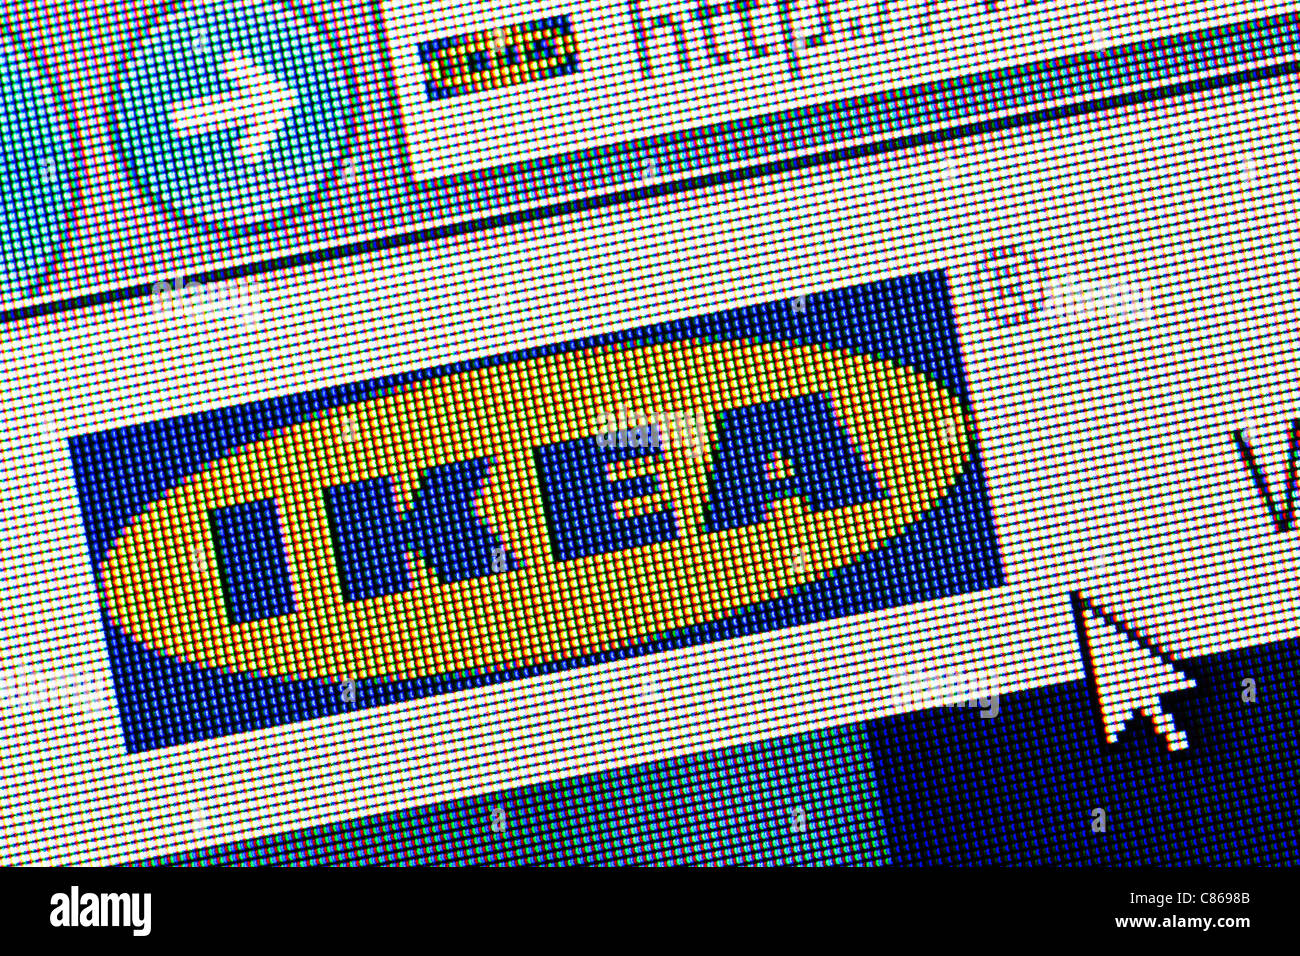 Logo et site web Ikea close up Banque D'Images